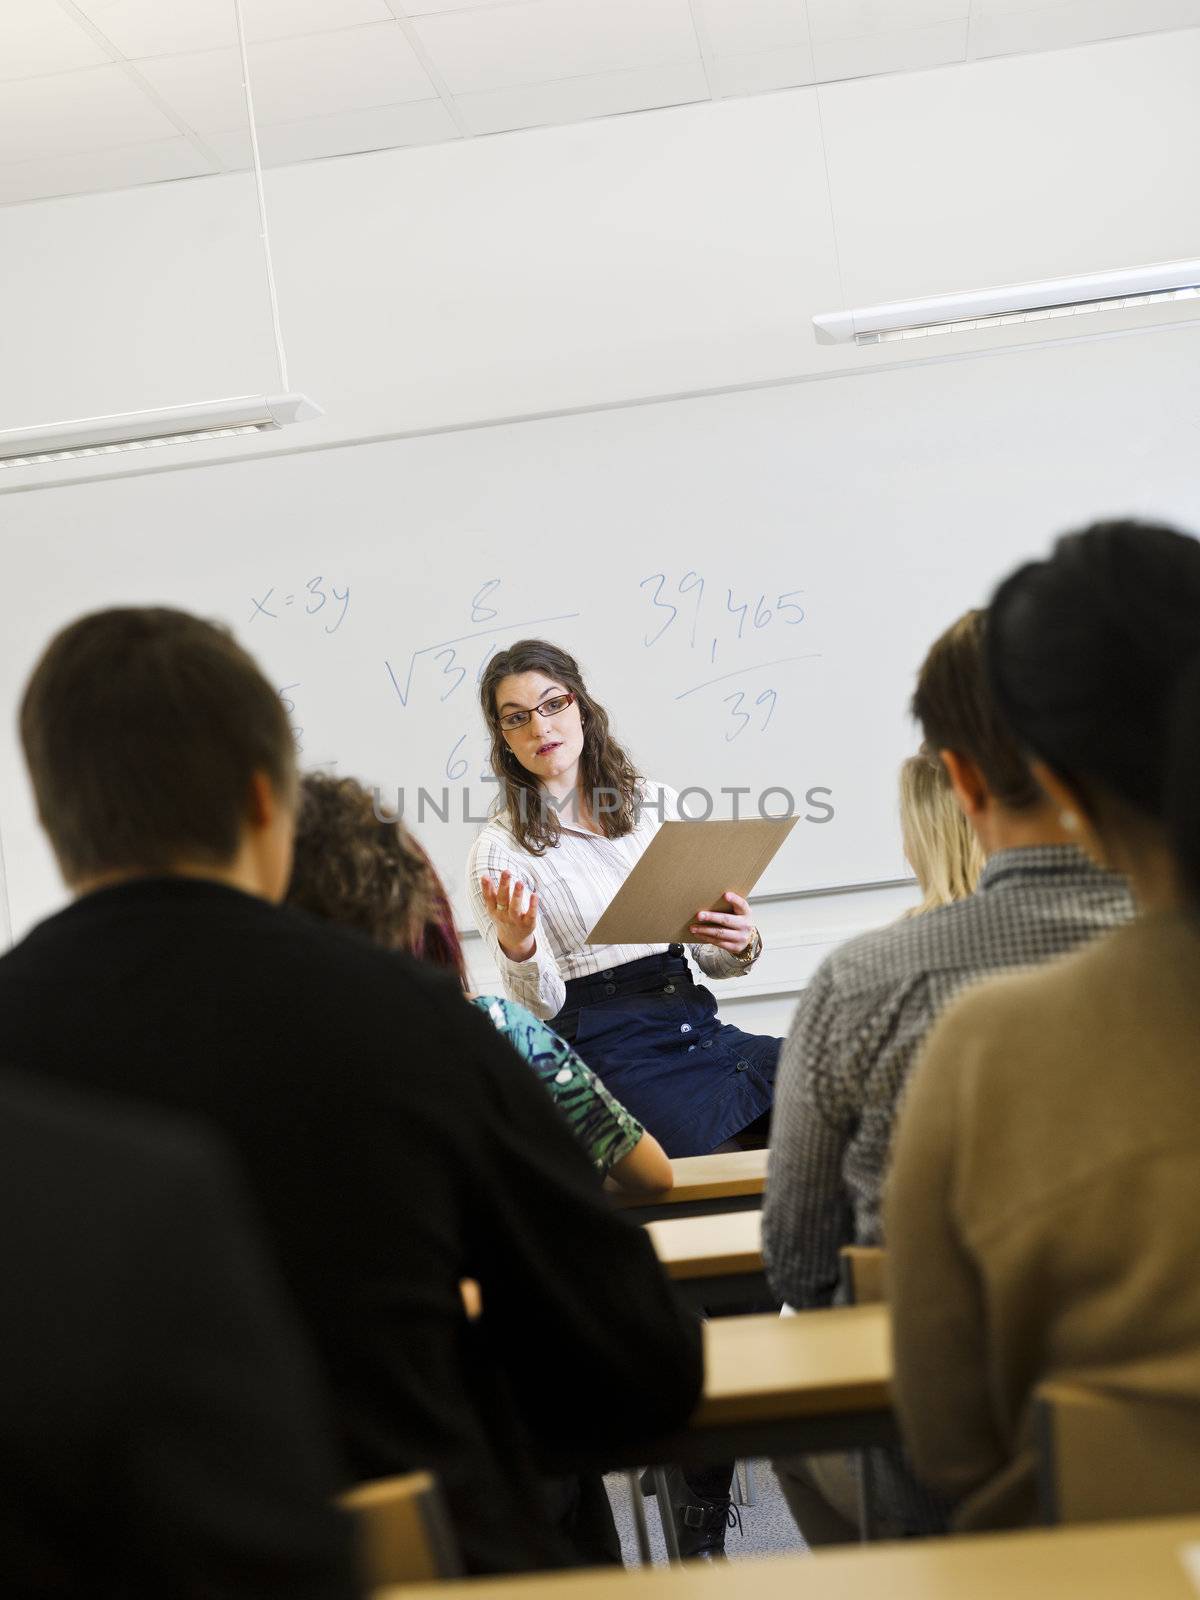 Schoolteacher in front of pupils in the classroom